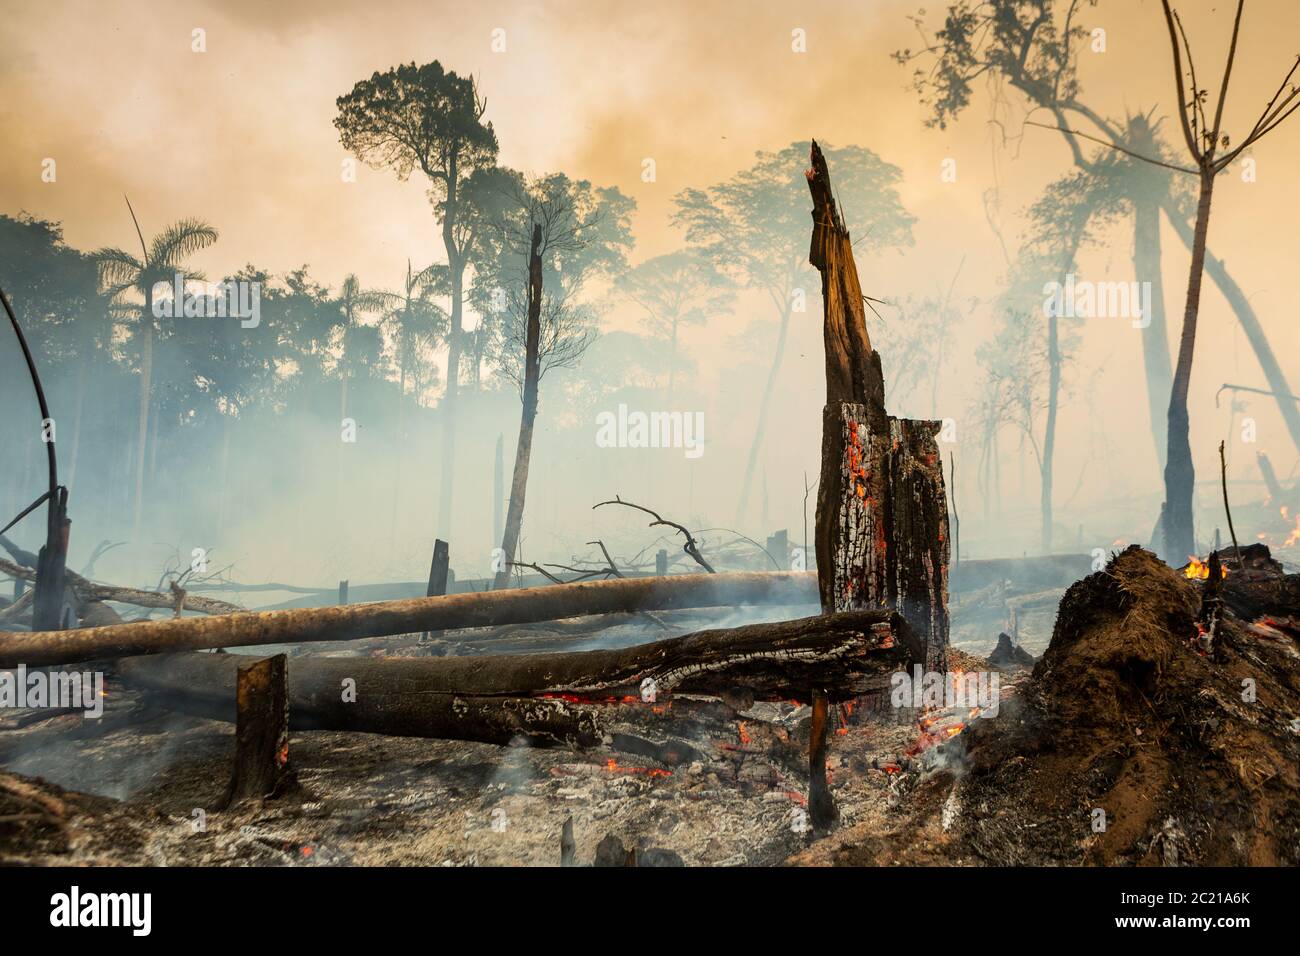 Alberi in fuoco con fumo nella deforestazione illegale nella foresta pluviale amazzonica per aprire l'area per l'agricoltura. Concetto di co2, ambiente, ecologia, clima Foto Stock